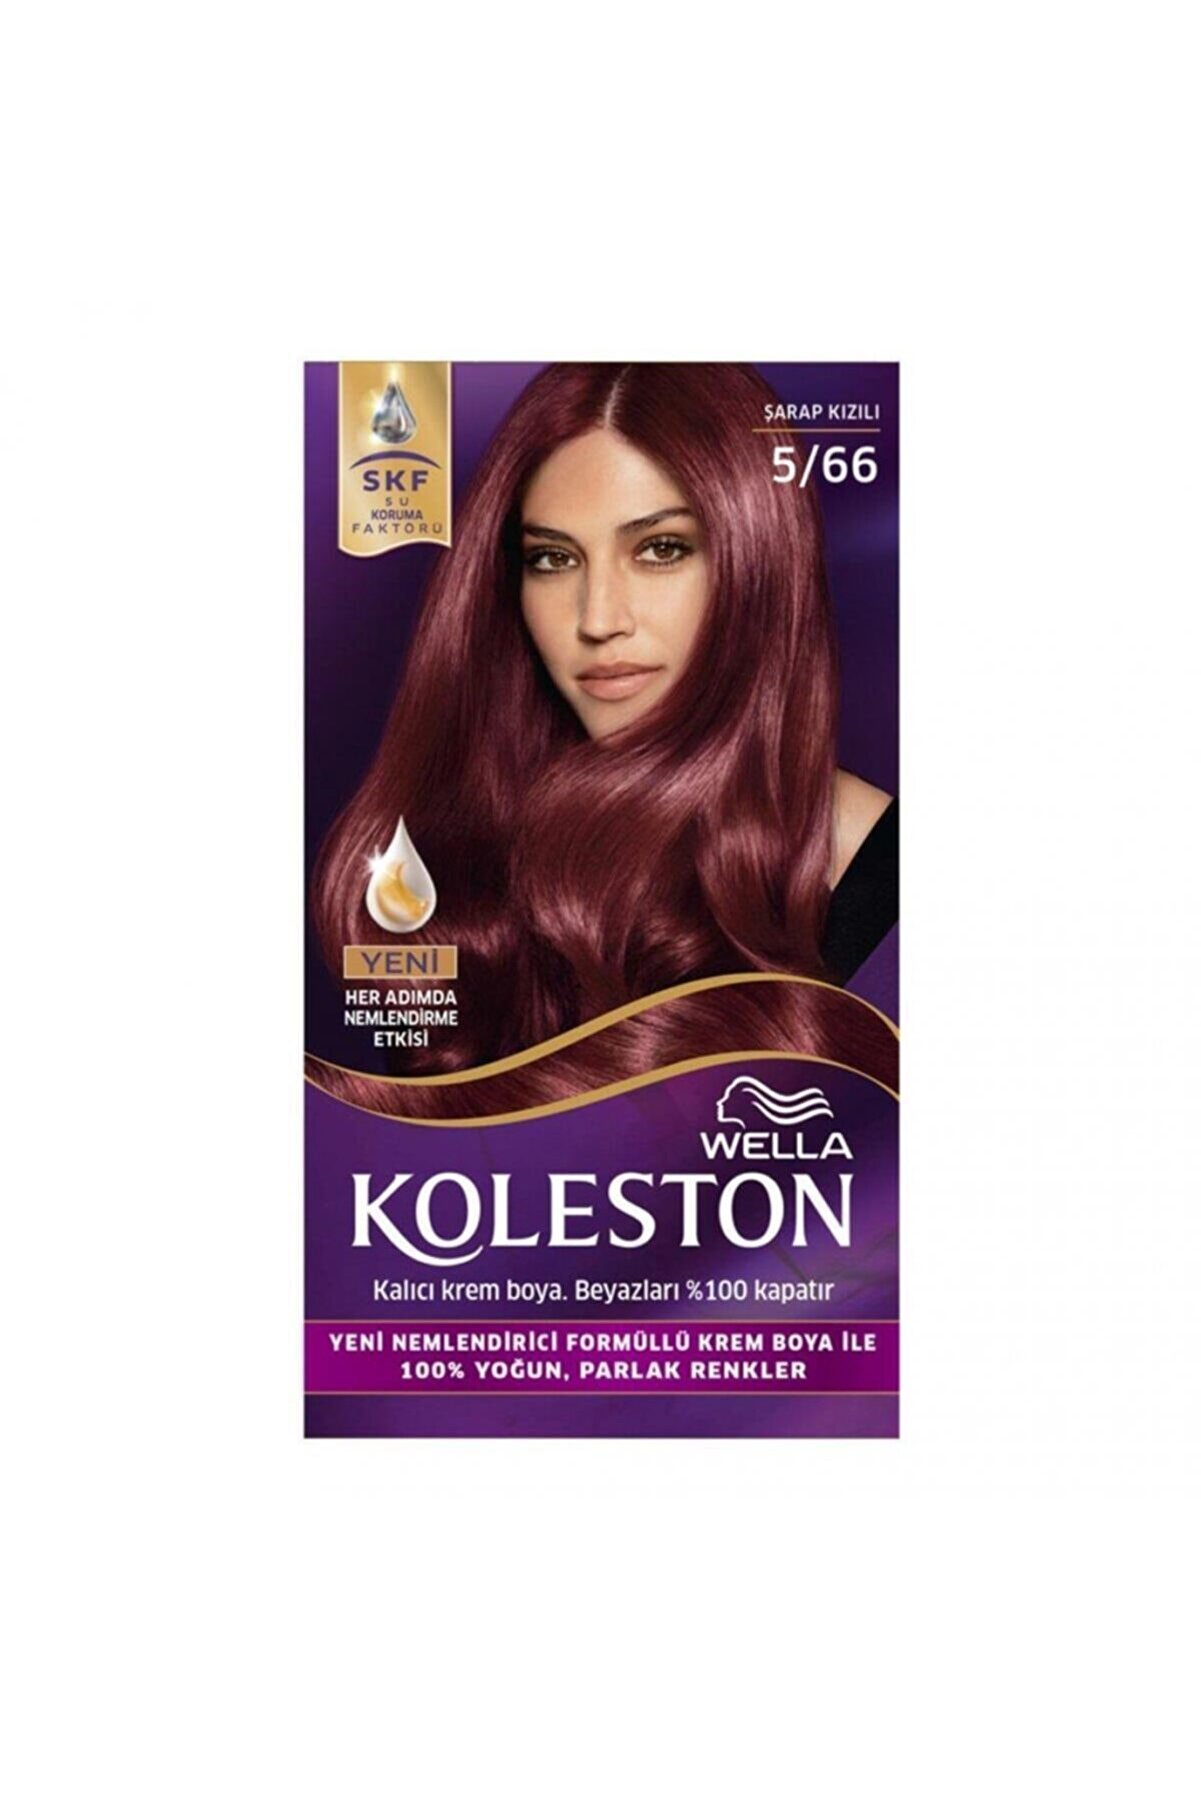 Koleston Marka Şarap Kızılı Kit Saç Boyası 5/66 Kategori: Saç Boyası